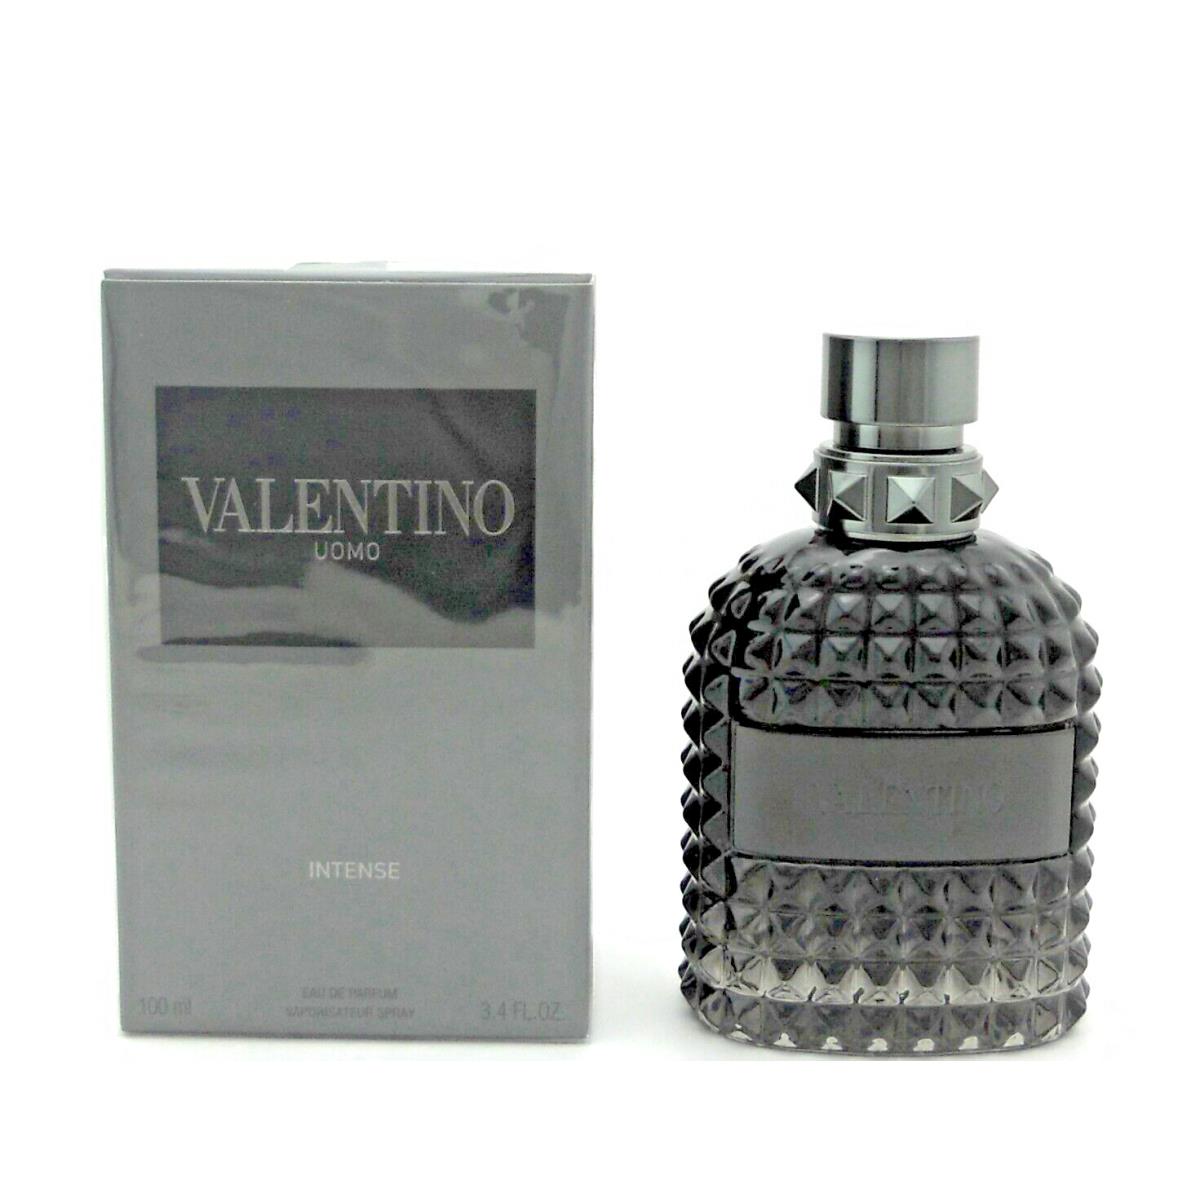 Valentino Uomo Intense by Valentino 3.4oz.Eau de Parfum Spray For Men Box